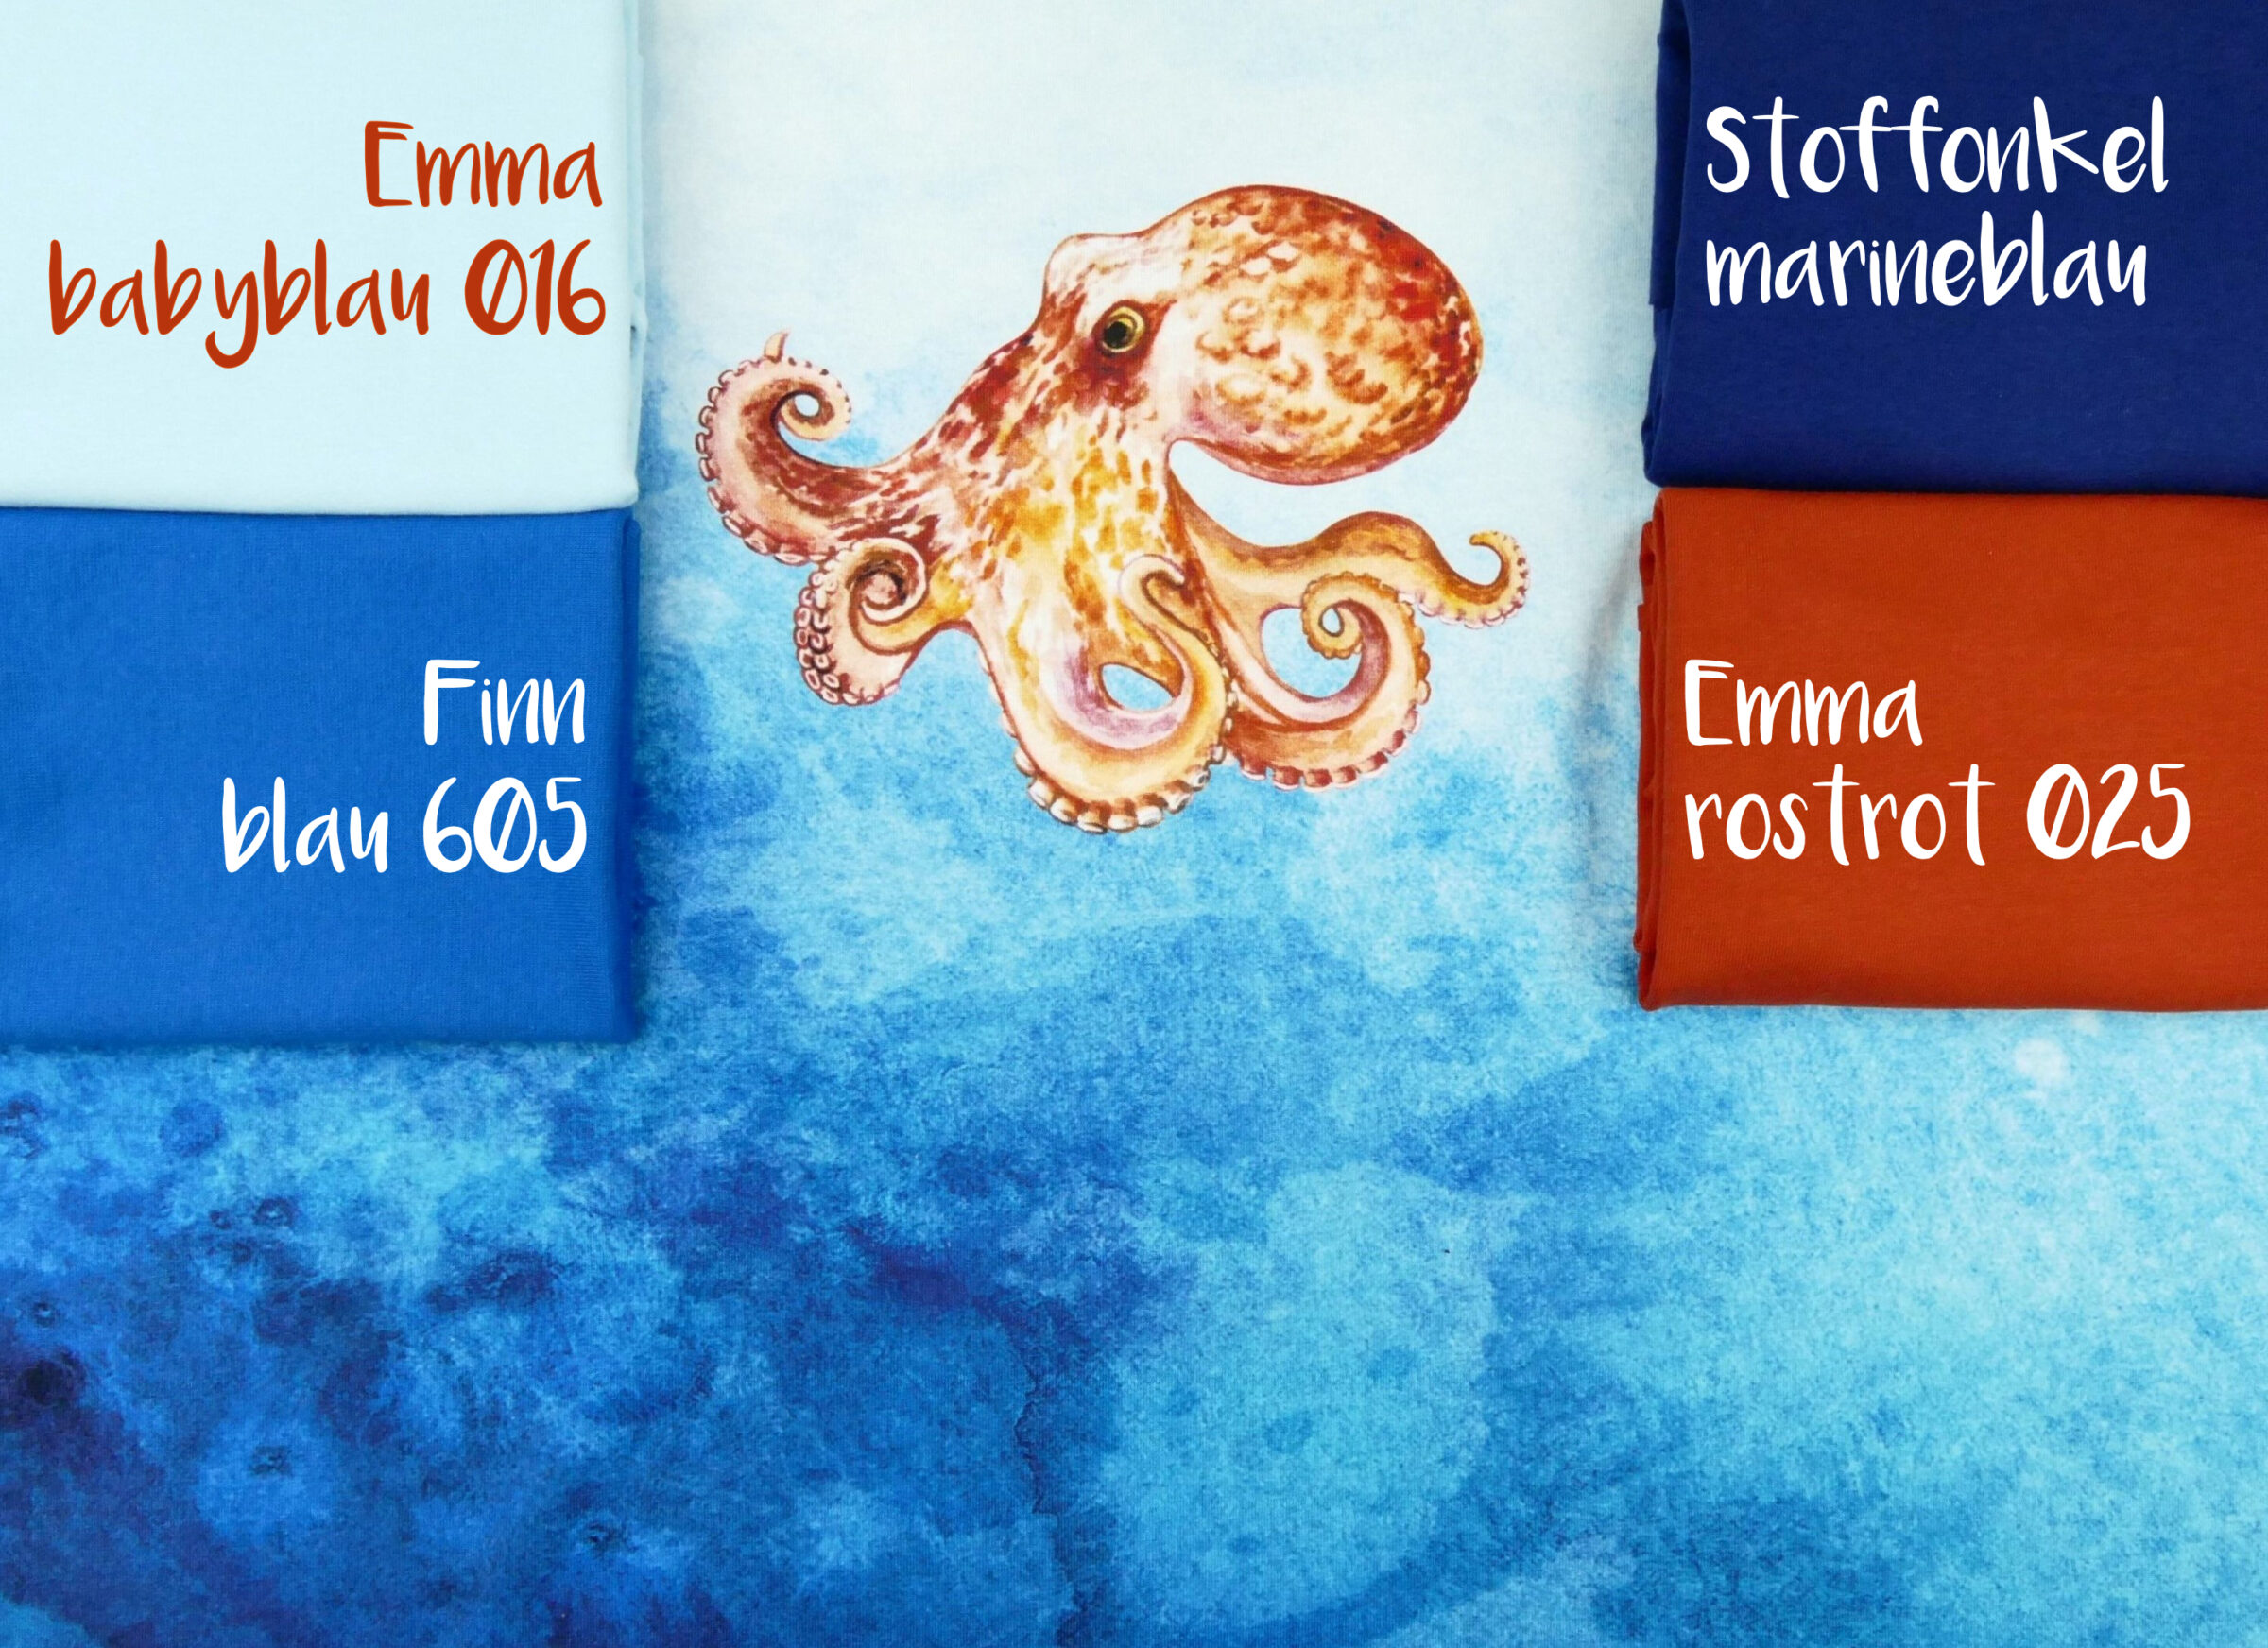 Kombistoffe Oktopus und Hai Emma babyblau, Finn blau, So marineblau Emma rostrot3fertig